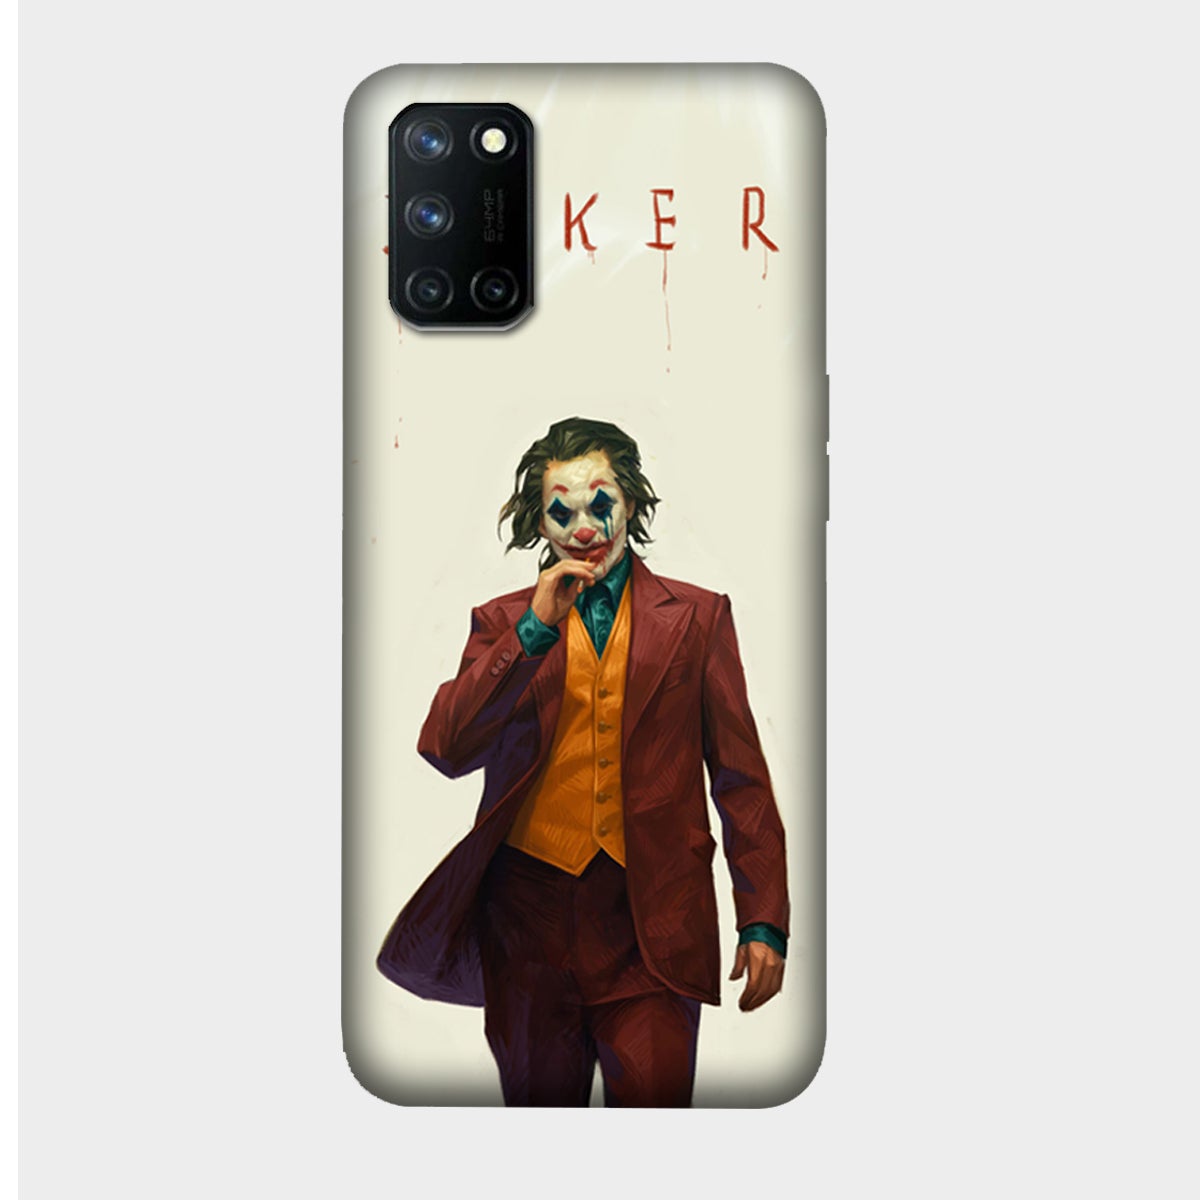 It's the Joker - Mobile Phone Cover - Hard Case